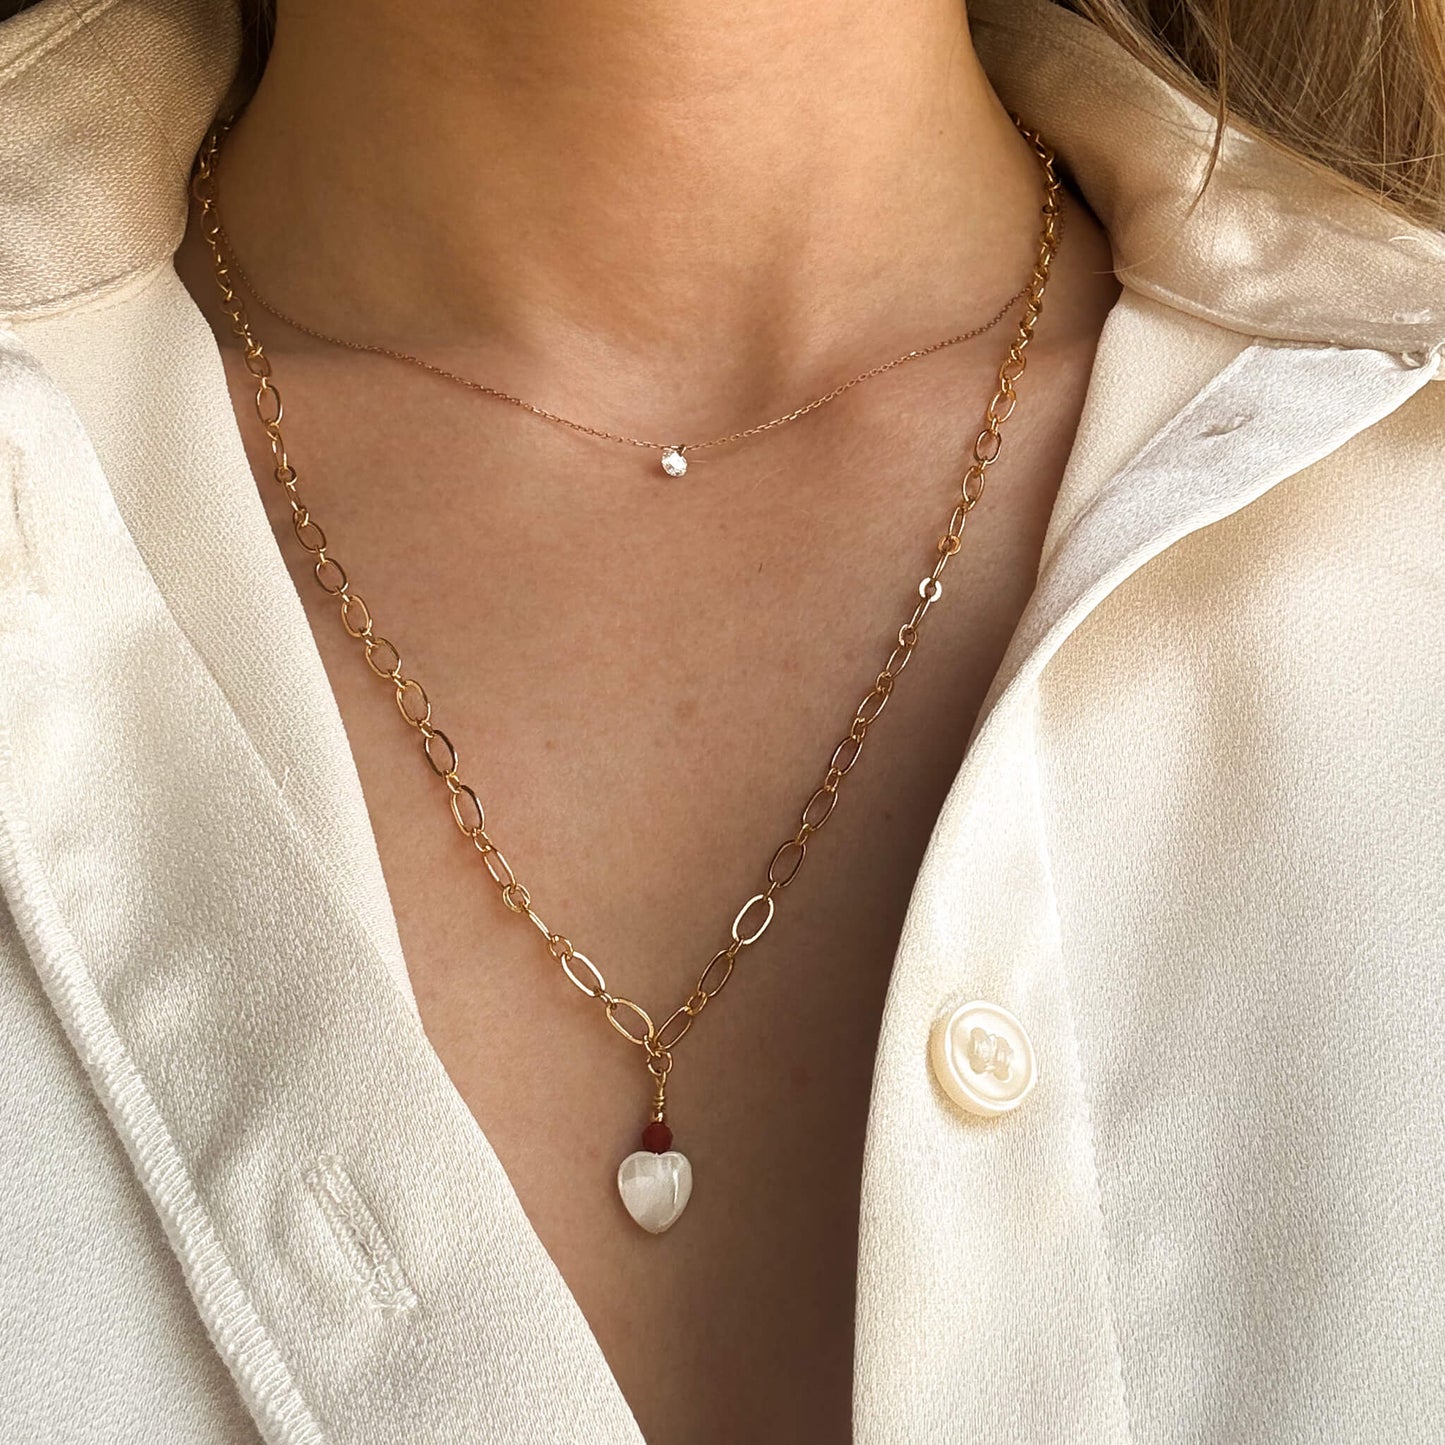 Collier Valentine avec coeur en nacre, perle de cornaline sur une chaine en plaqué or 